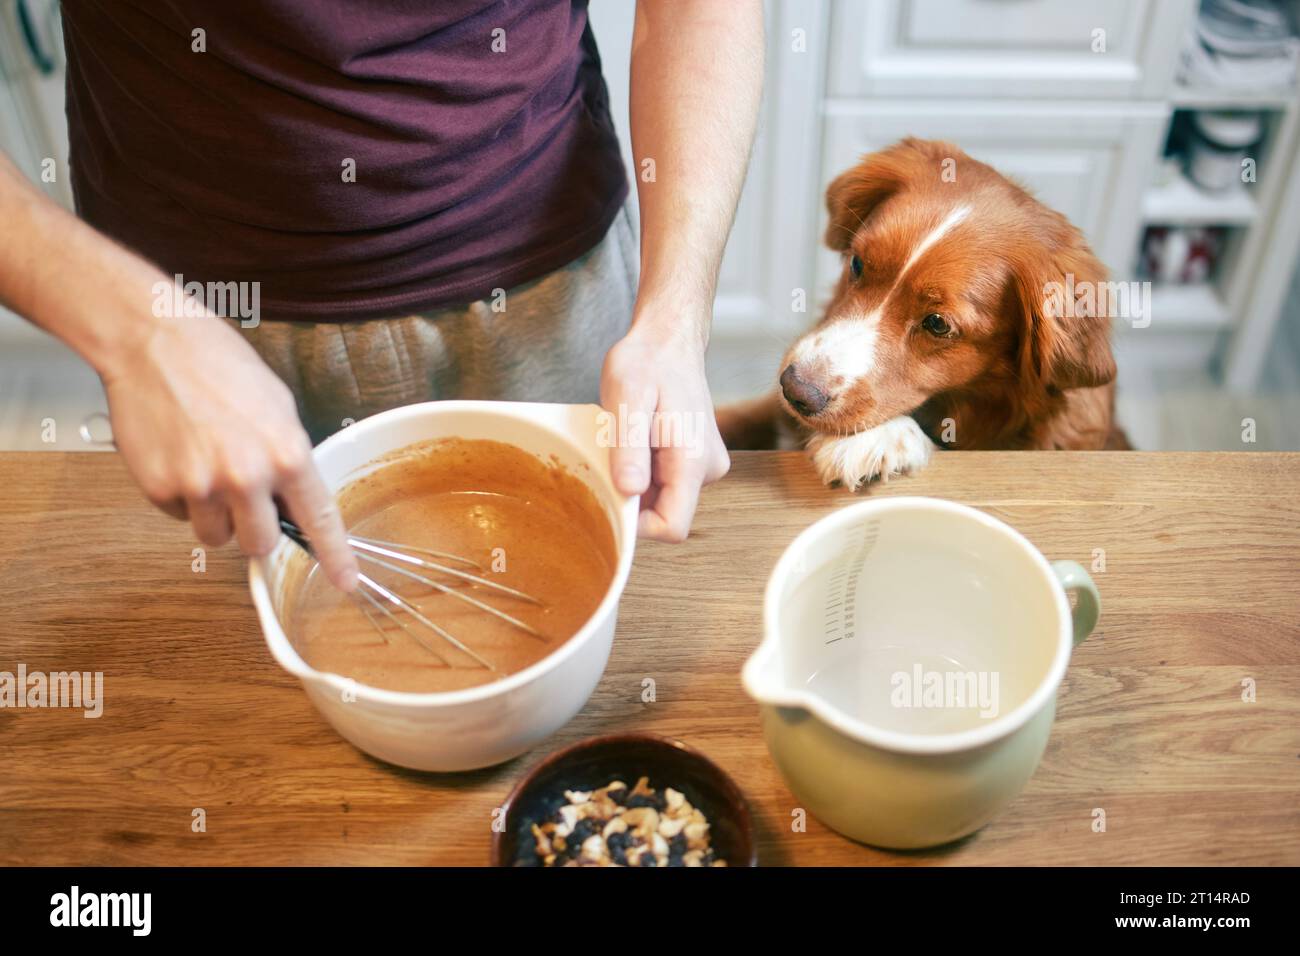 Mann und Hund zusammen zu Hause in der Küche. Nova Scotia Duck Tolling Retriever beobachtet, während sein Haustierbesitzer Teig mischt, um süßen Kuchen zuzubereiten. Stockfoto